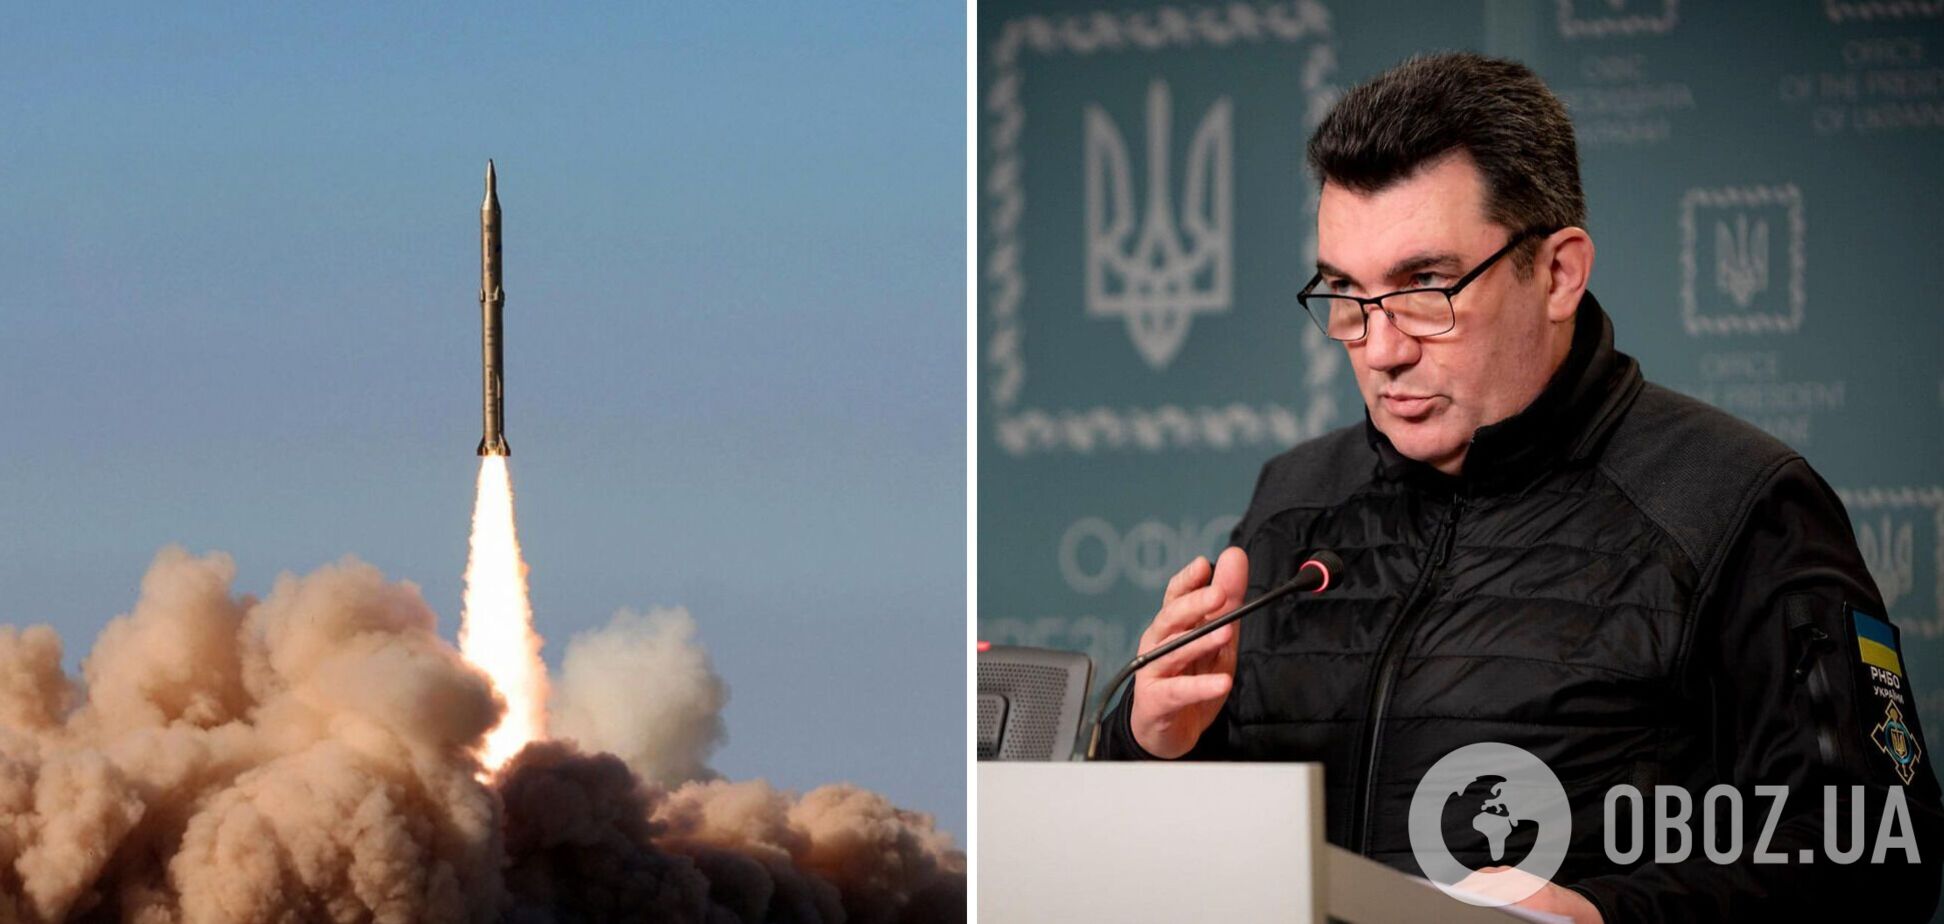 Данилов: Россия может нанести по Украине еще 3-4 ракетных удара большой мощности